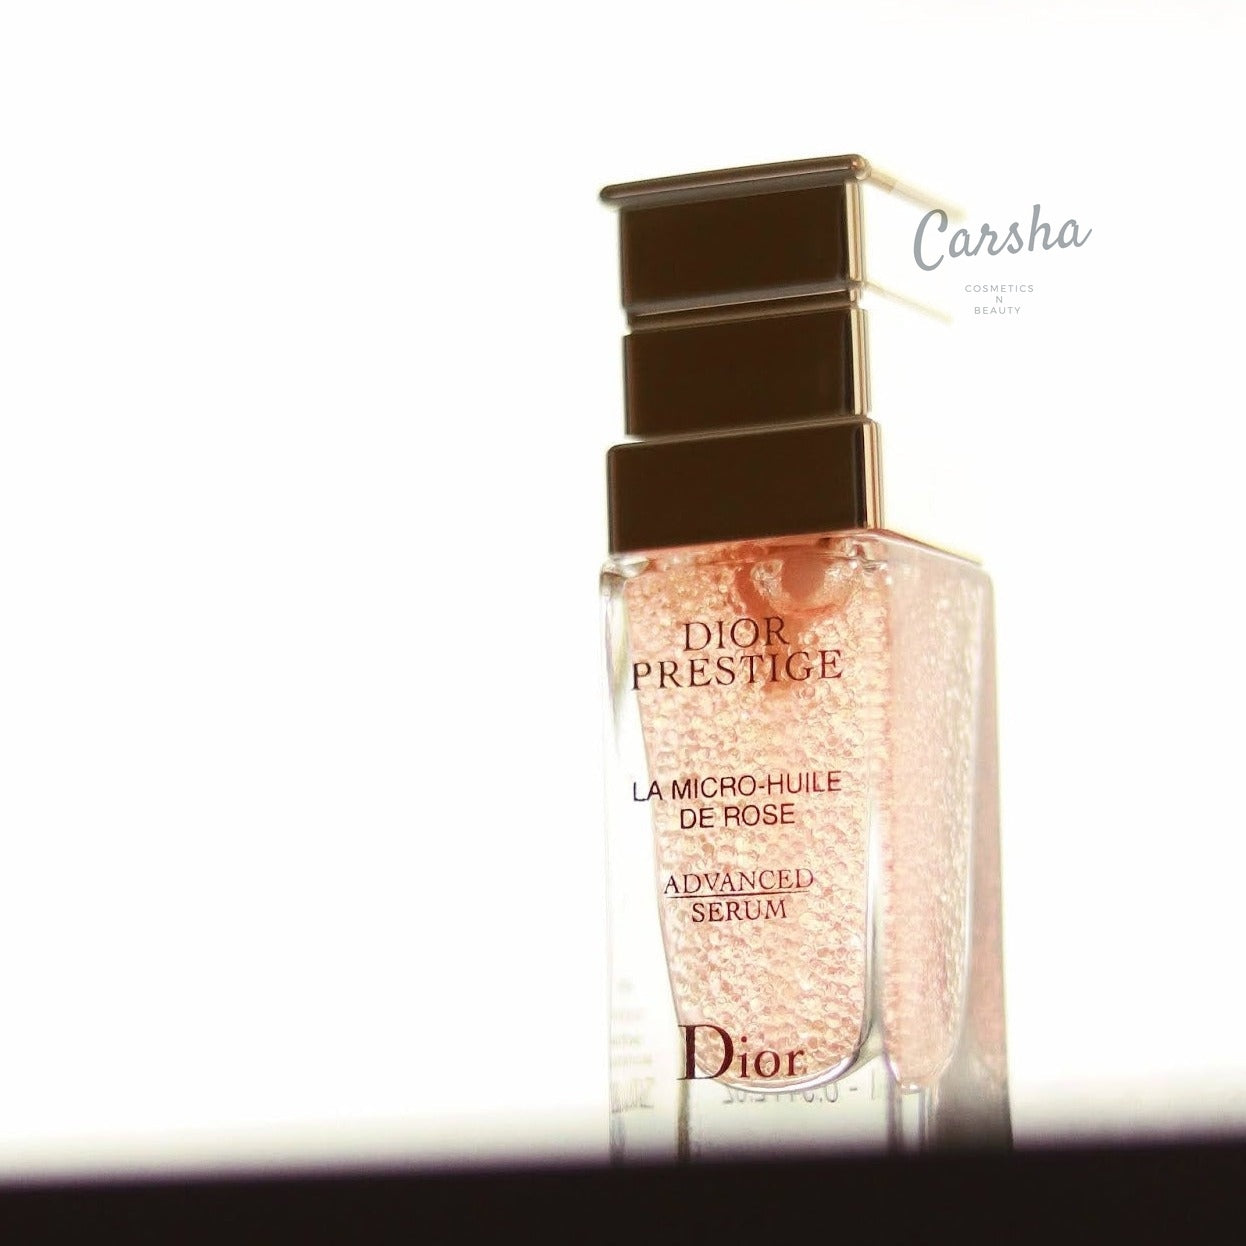 Dior Prestige La Micro-Huile de Rose Advanced Serum 30ml | Carsha